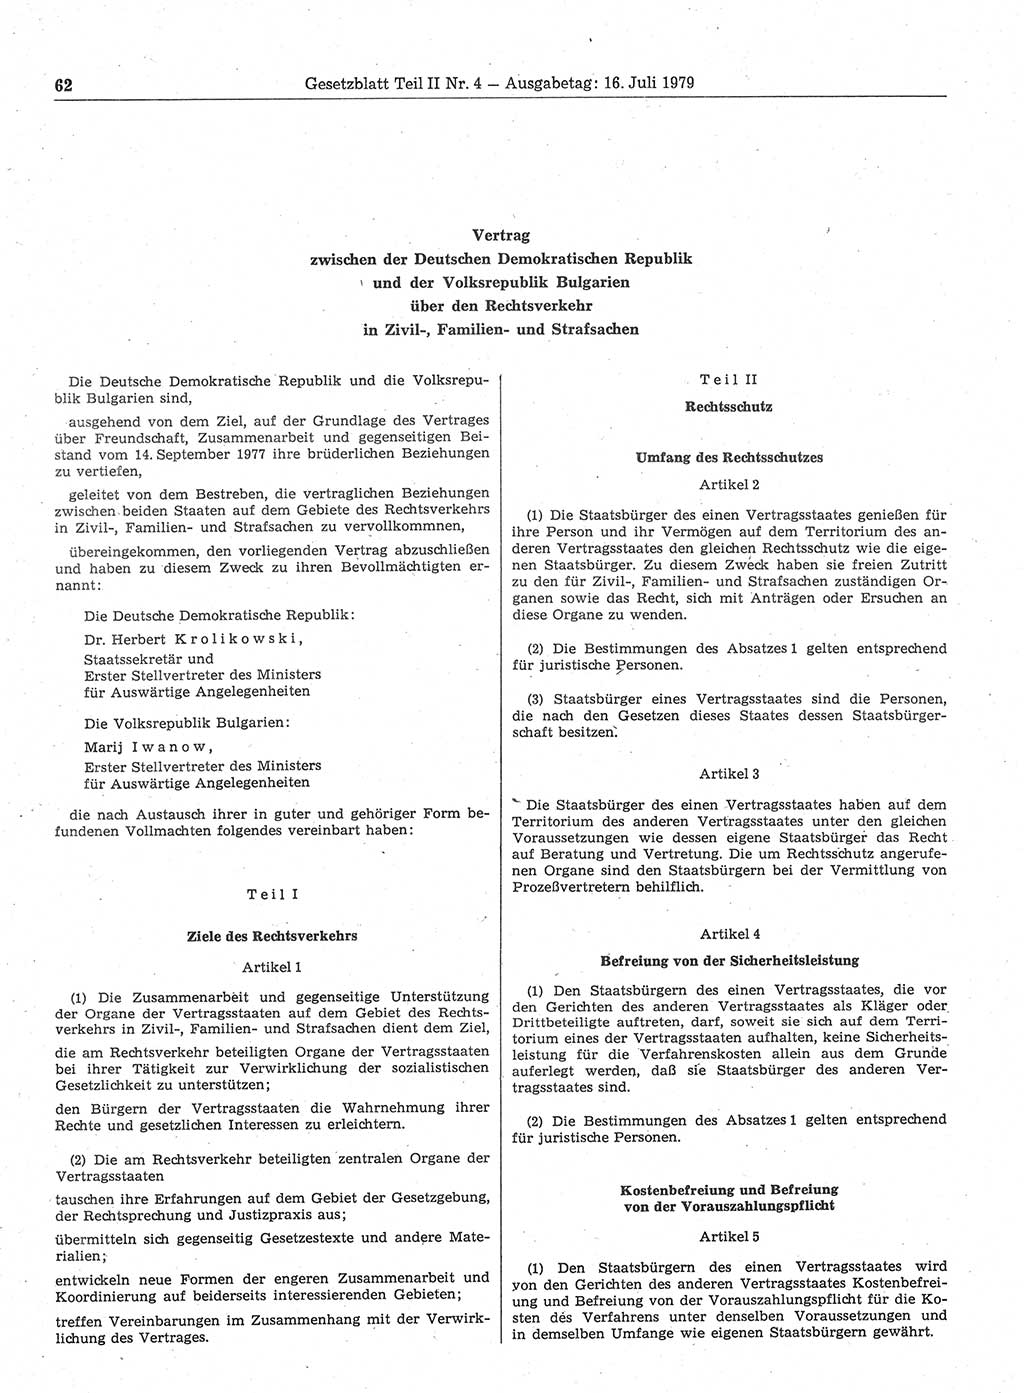 Gesetzblatt (GBl.) der Deutschen Demokratischen Republik (DDR) Teil ⅠⅠ 1979, Seite 62 (GBl. DDR ⅠⅠ 1979, S. 62)